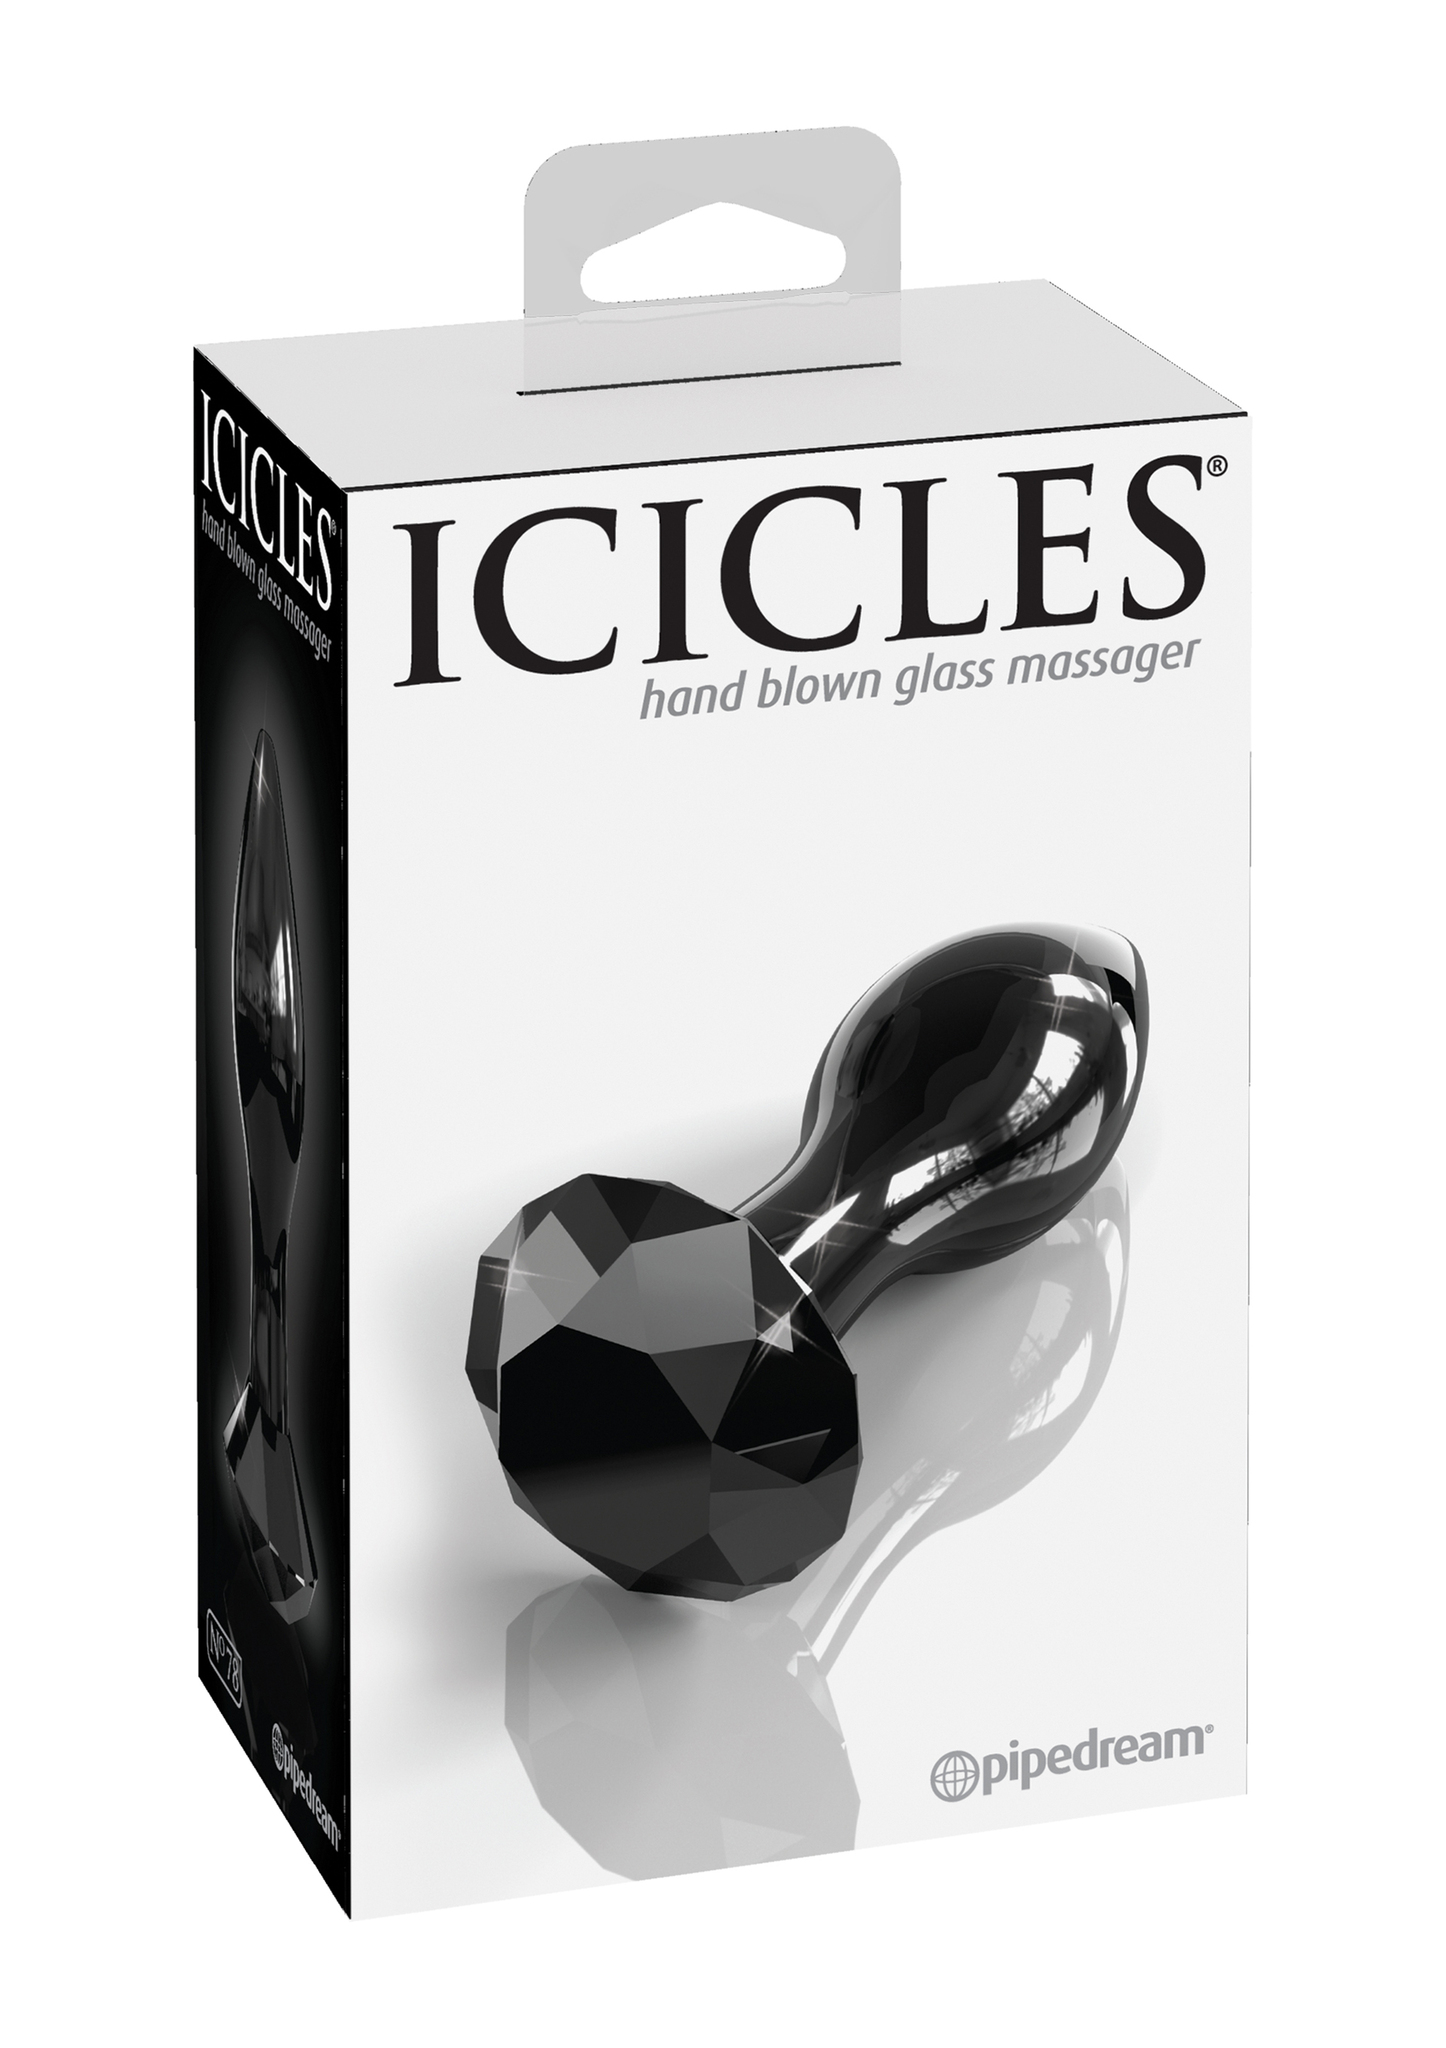 Icicles No 78